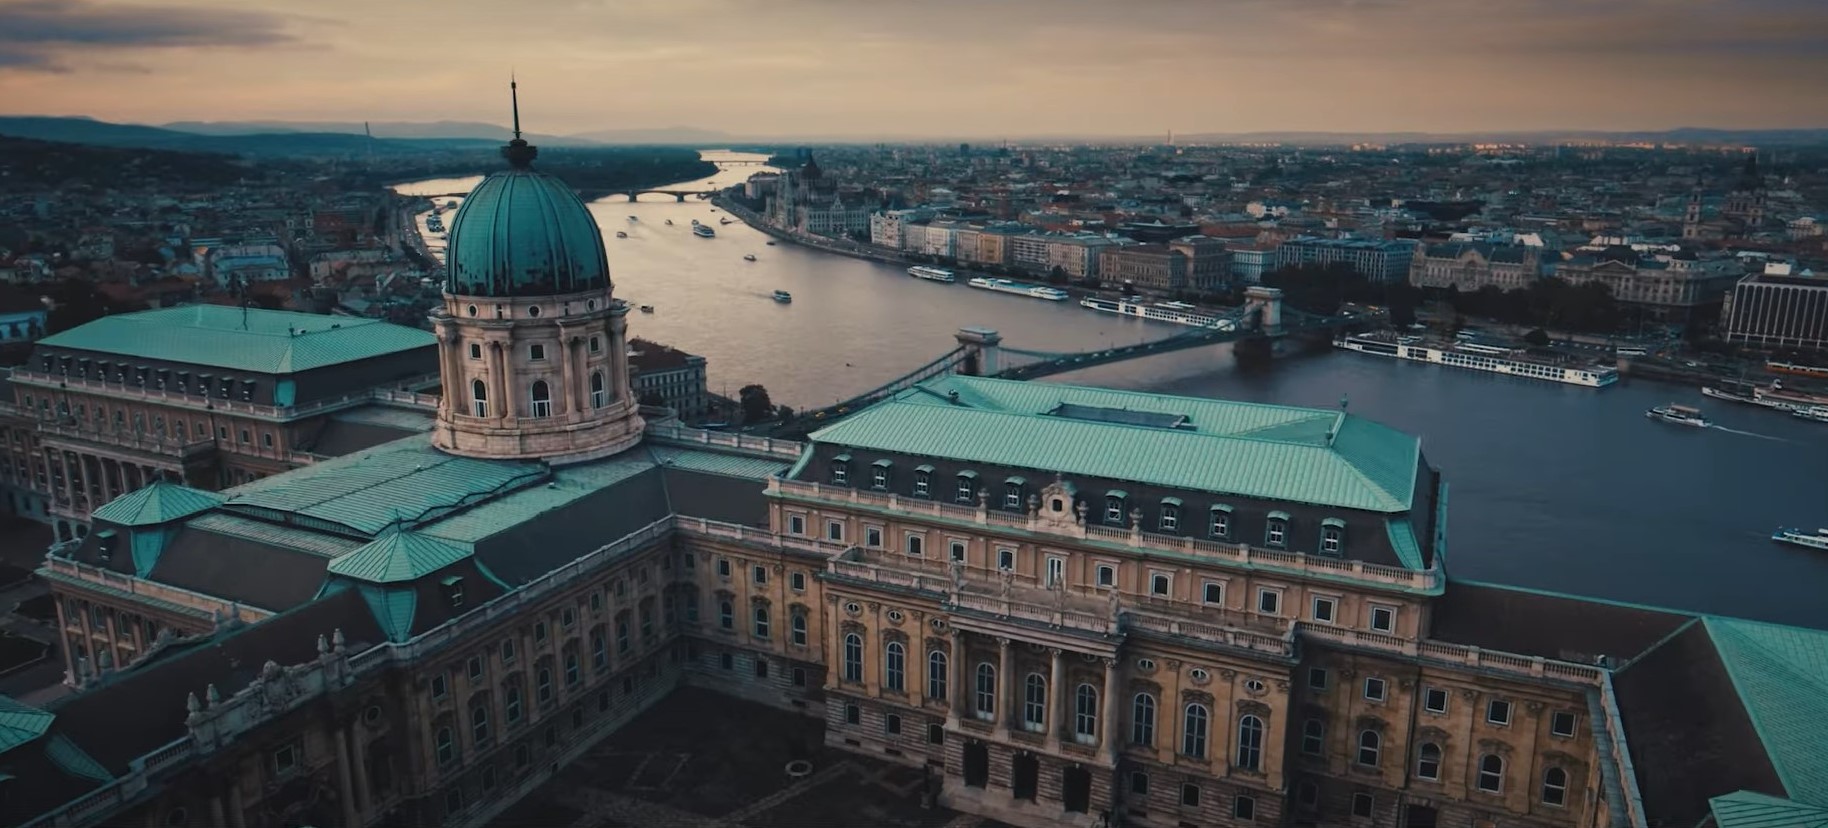 Spice of Europe-Budimpešta film od 365 slika